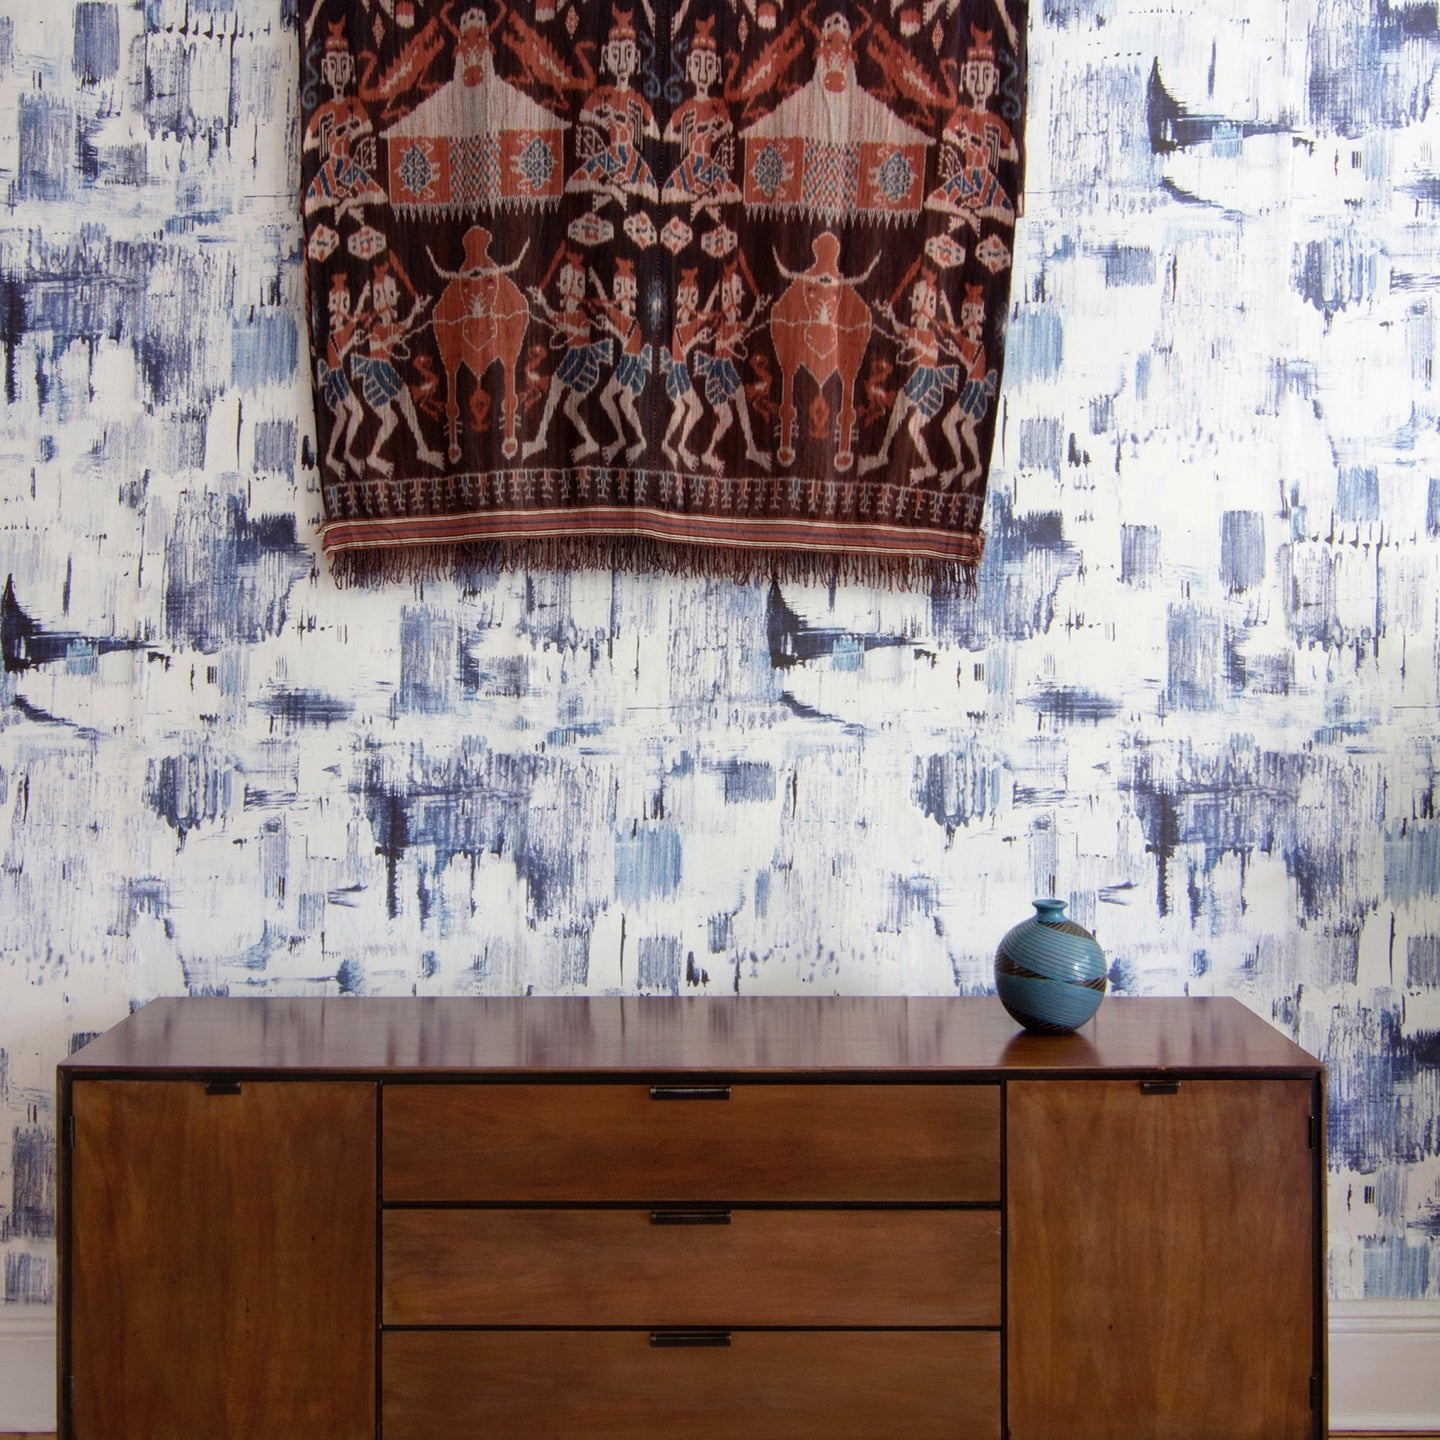 A dresser against a blue wallpaper